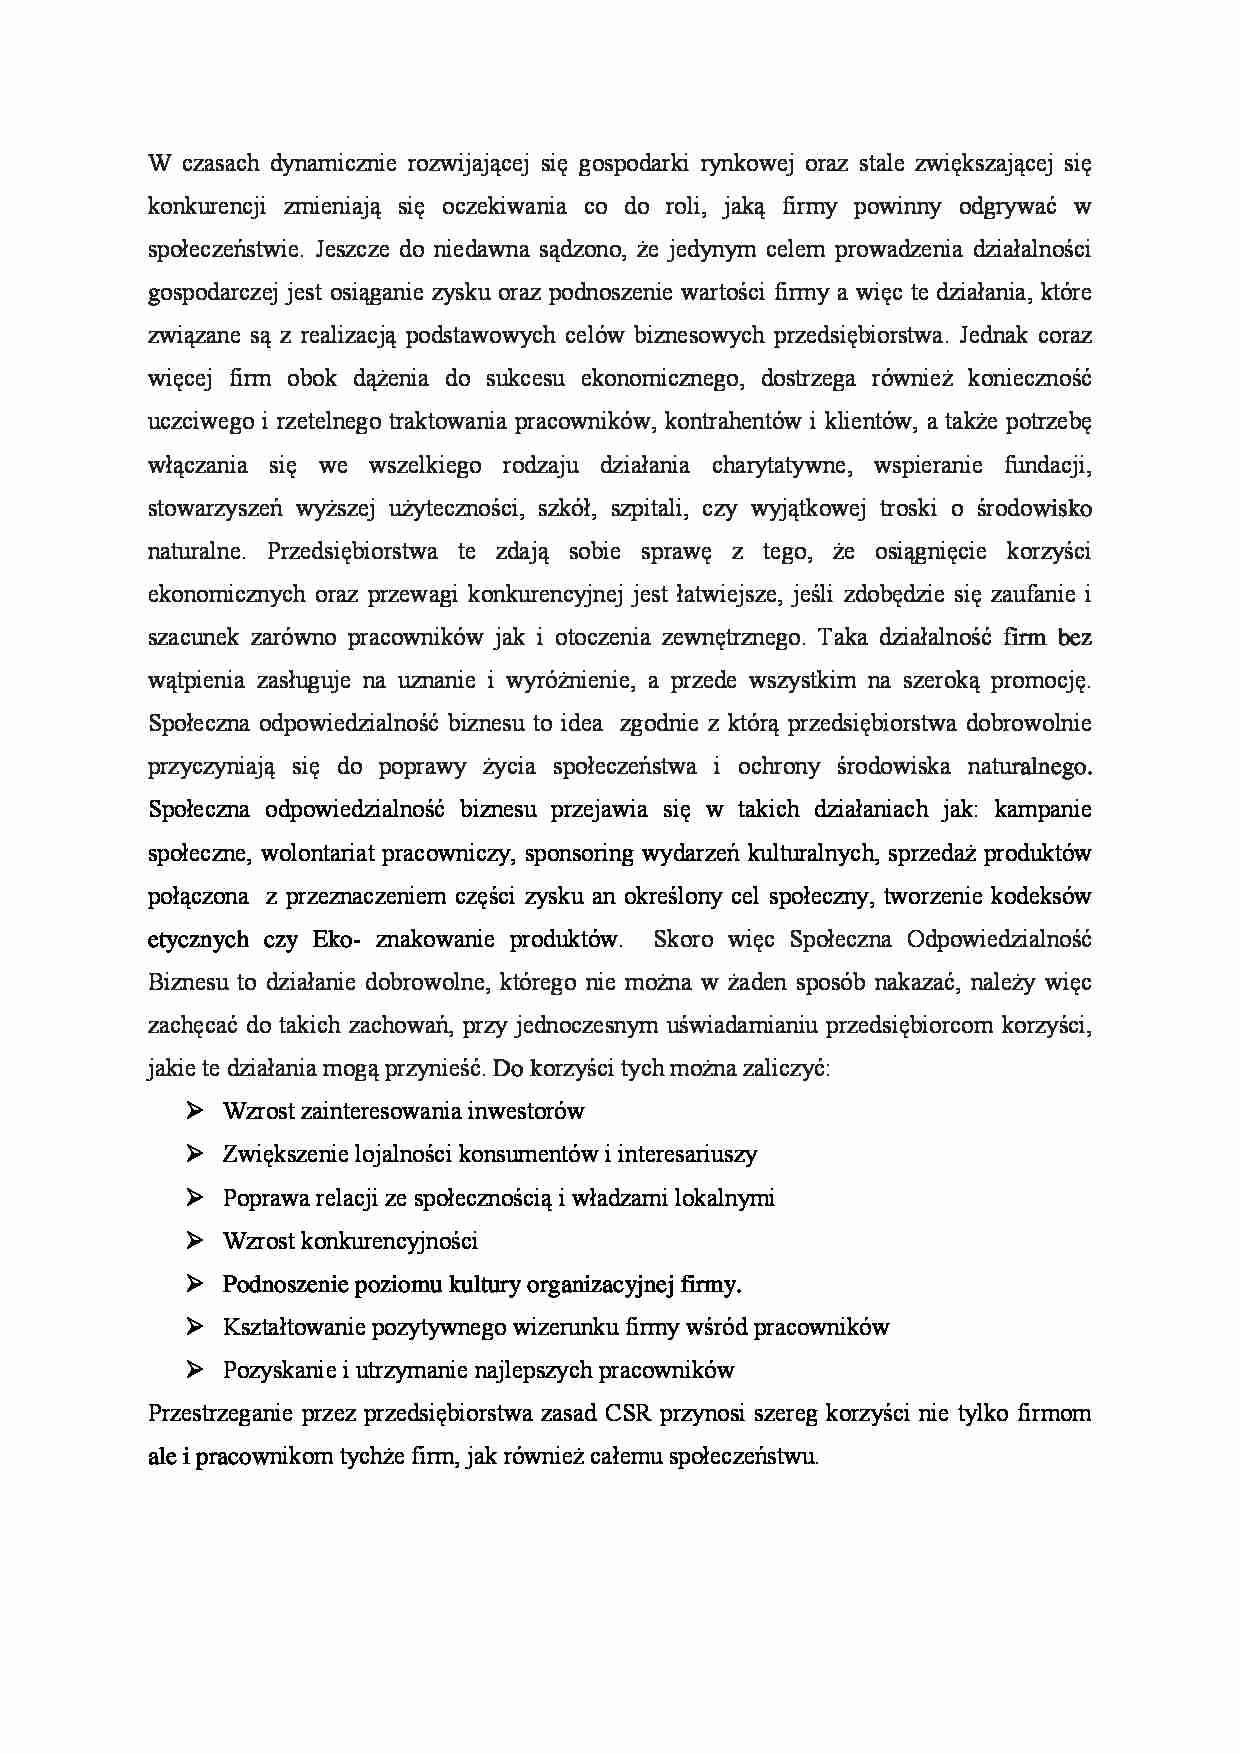 Strategia CSR firmy śNIEŻKA - praca zaliczeniowa, MWSe - strona 1